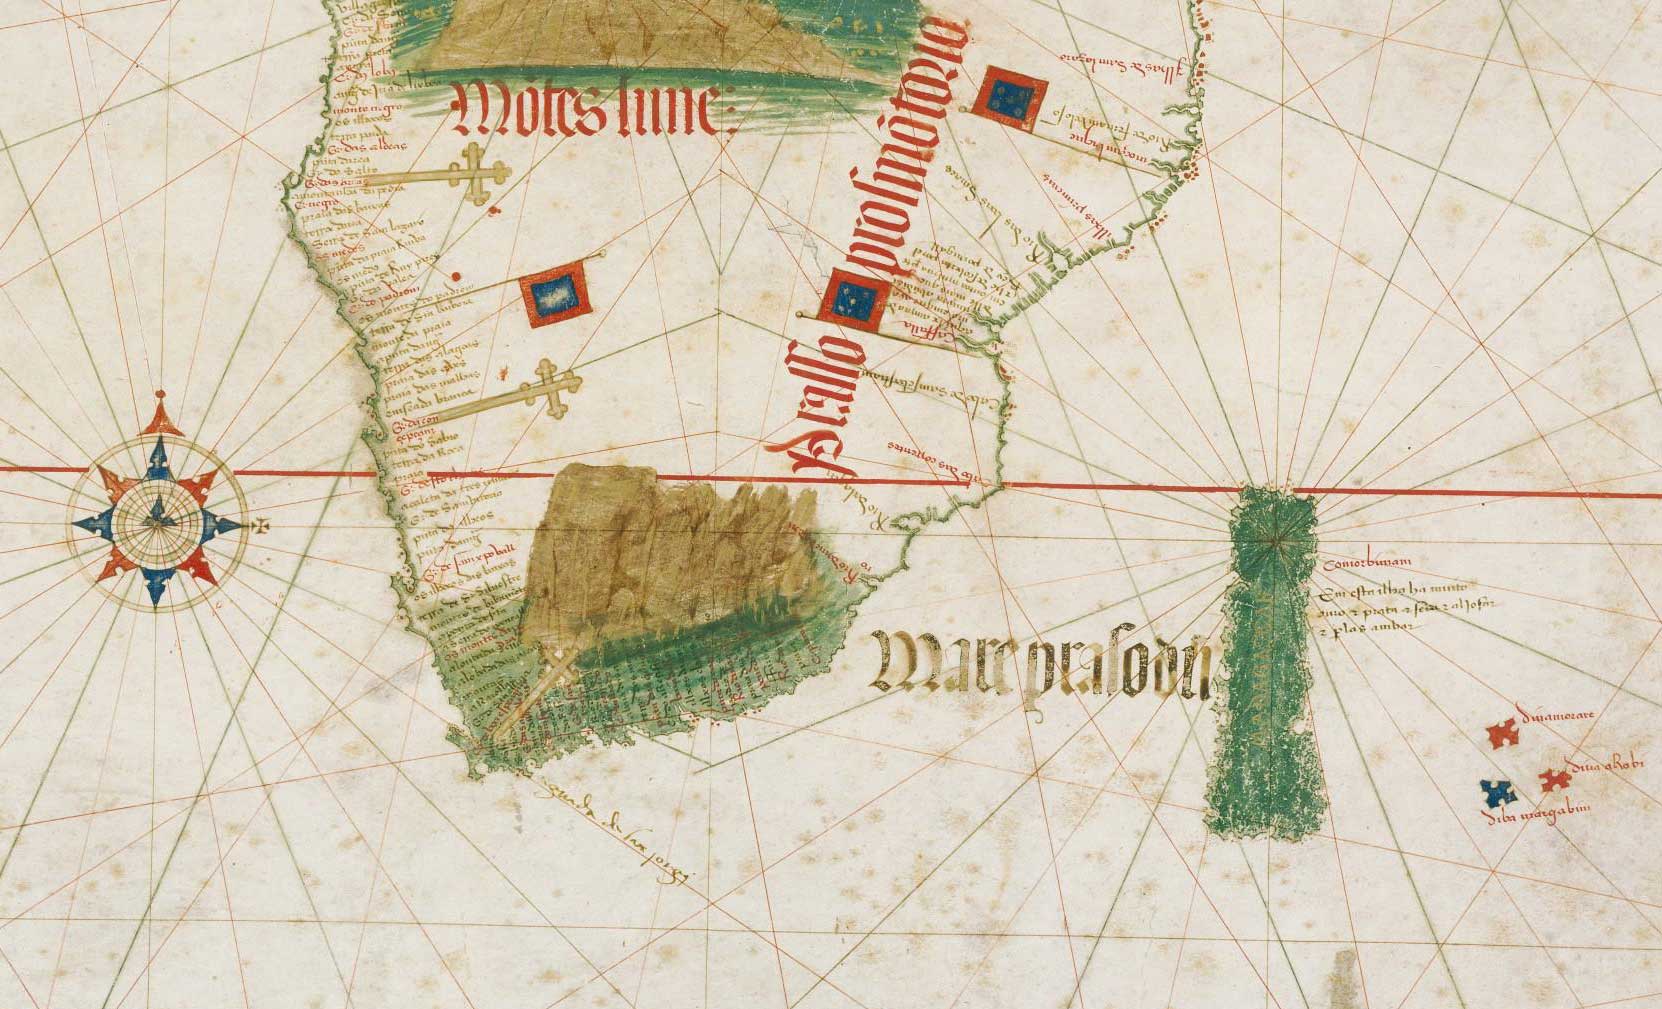 Carntino, unknown Portuguese cartographer (1502)